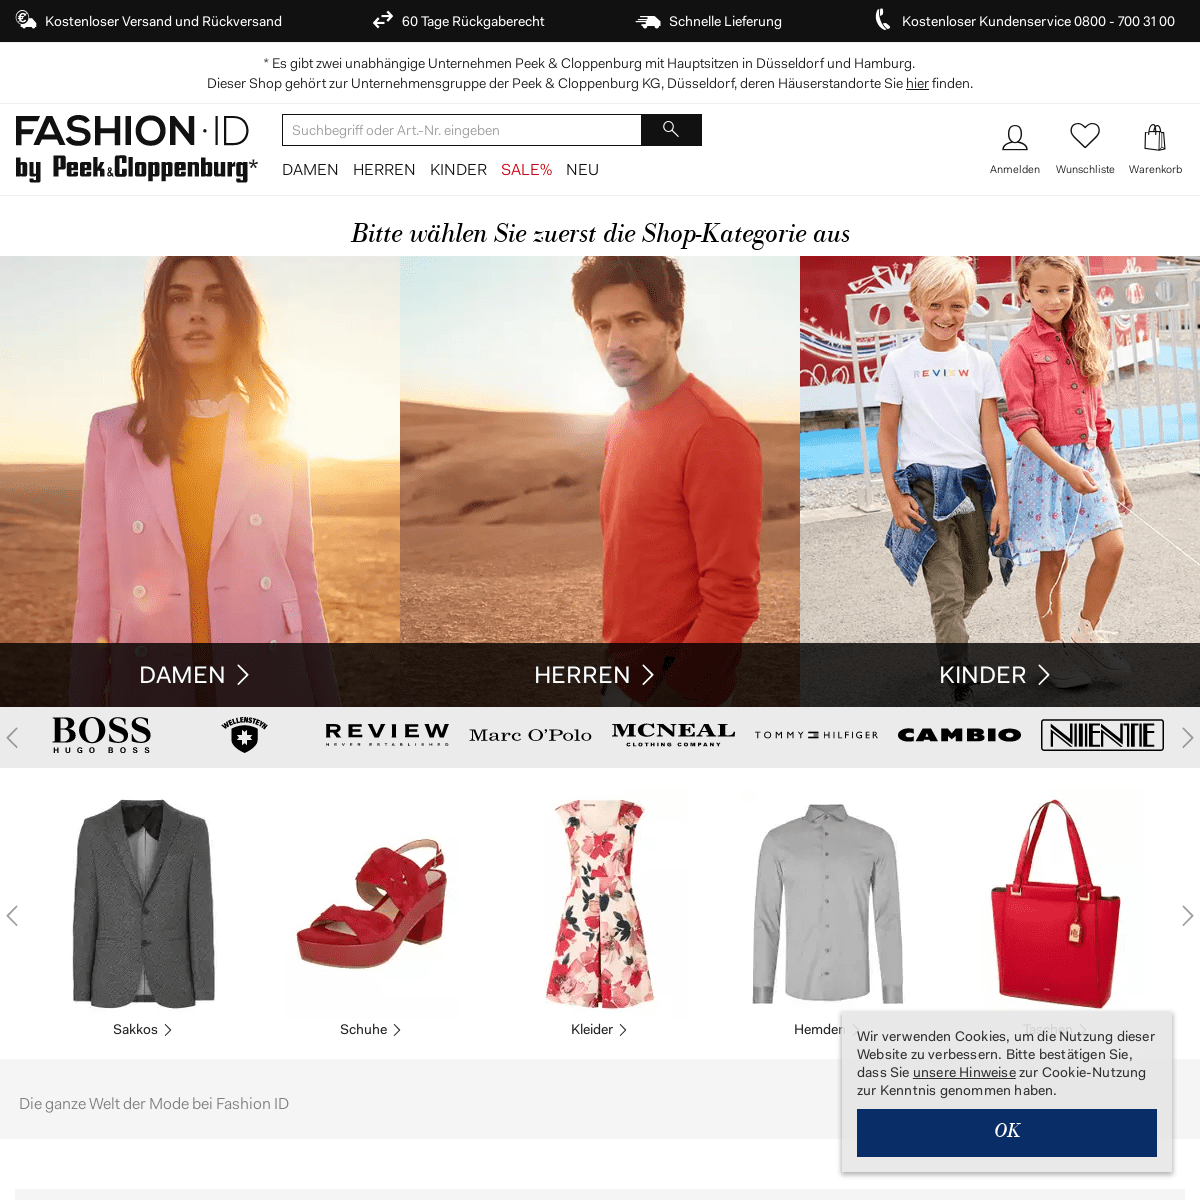 Fashion Online Shop: Aktuelle Sommermode im Online Shop kaufen | FASHION ID Online Shop